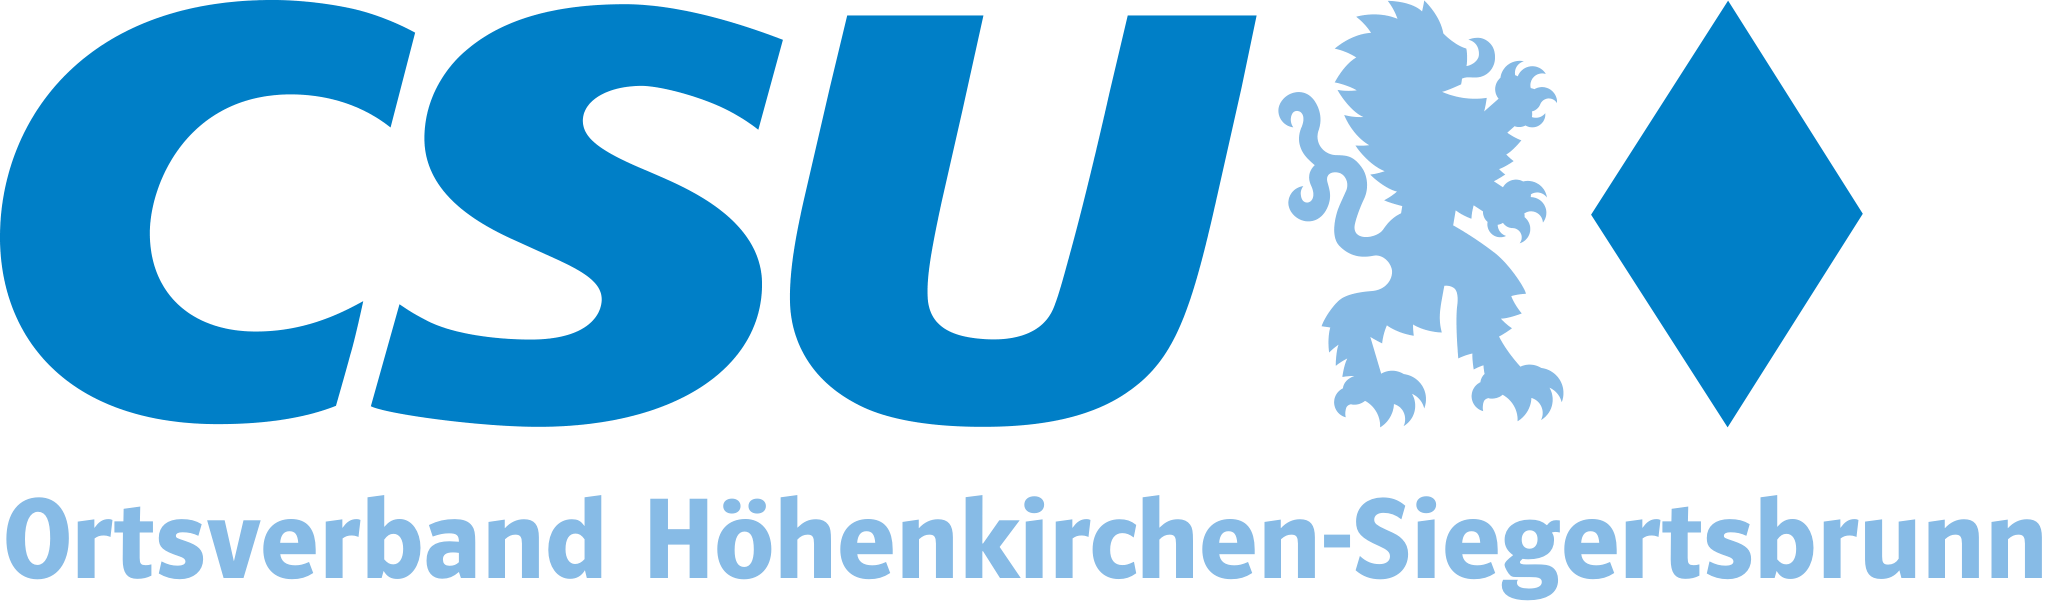 CSU Höhenkirchen-Siegertsbrunn